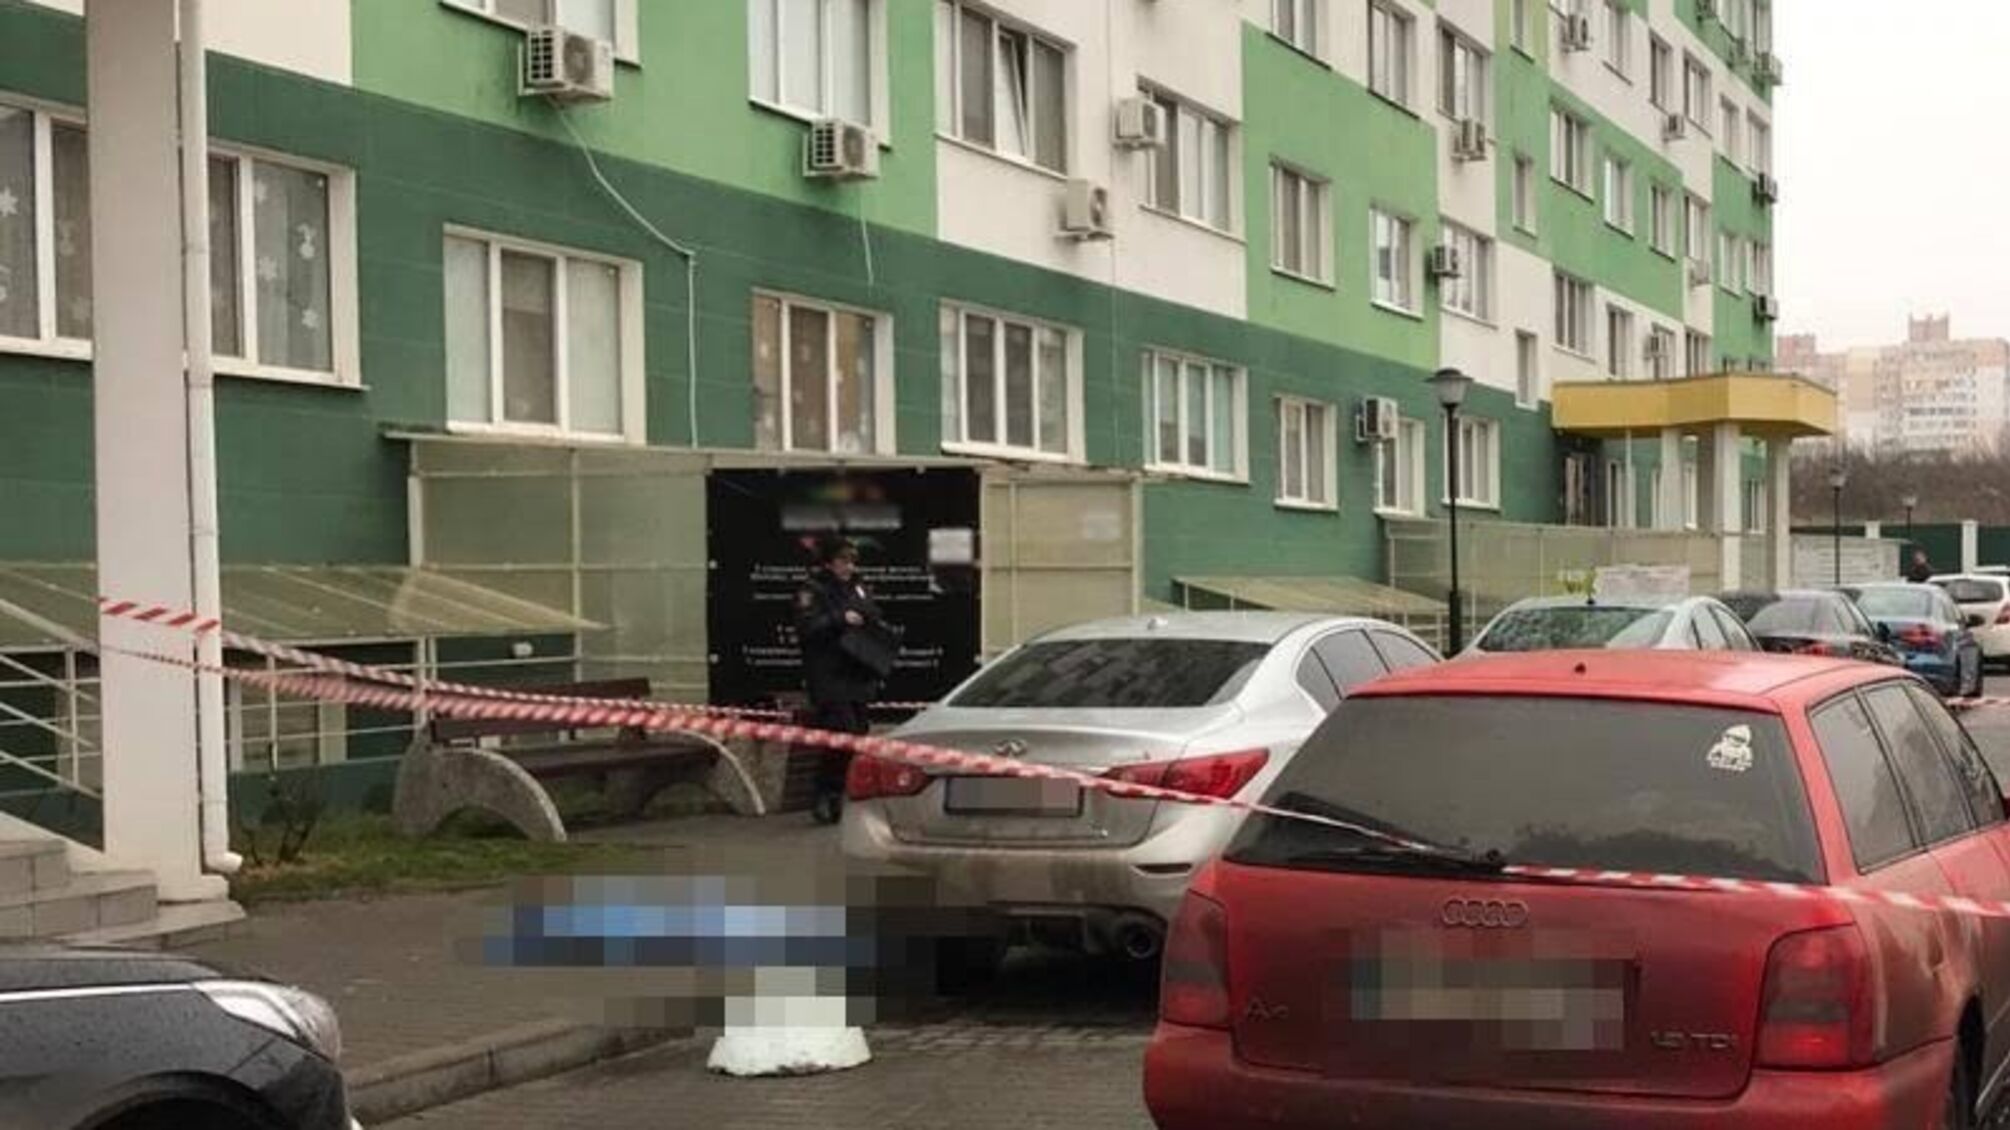 Тіло випадково знайшли перехожі: в Одесі чоловік викинувся з вікна багатоповерхівки (фото)